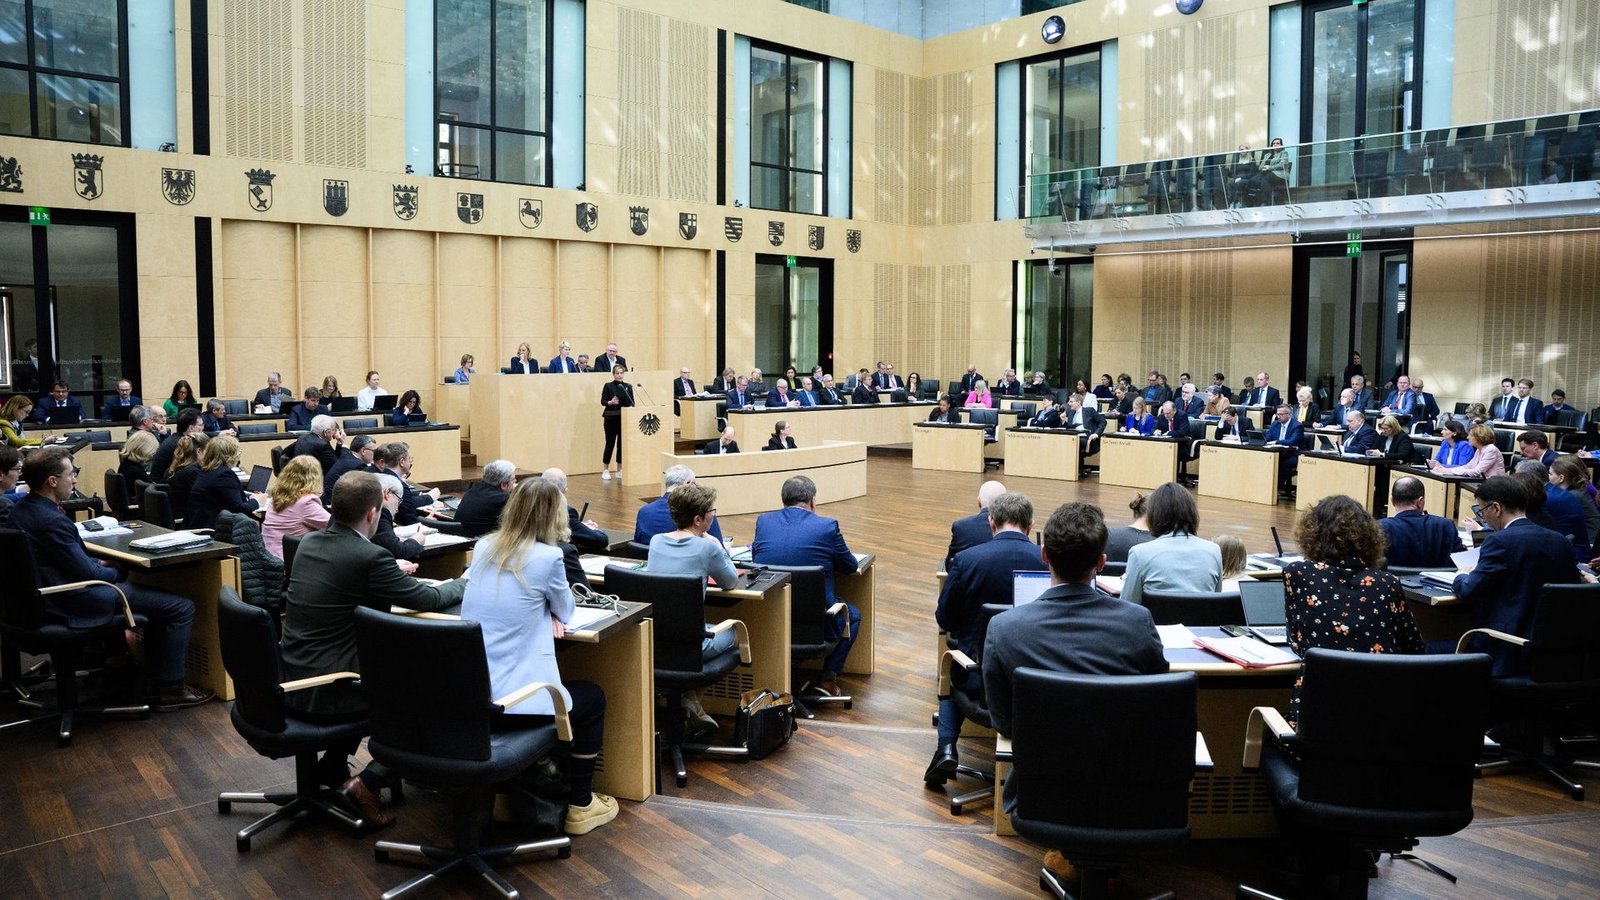 Der Bundesrat hat heute mehrere Gesetze der Bundesregierung ohne große Debatte gebilligt.Foto: Bernd von Jutrczenka/dpa